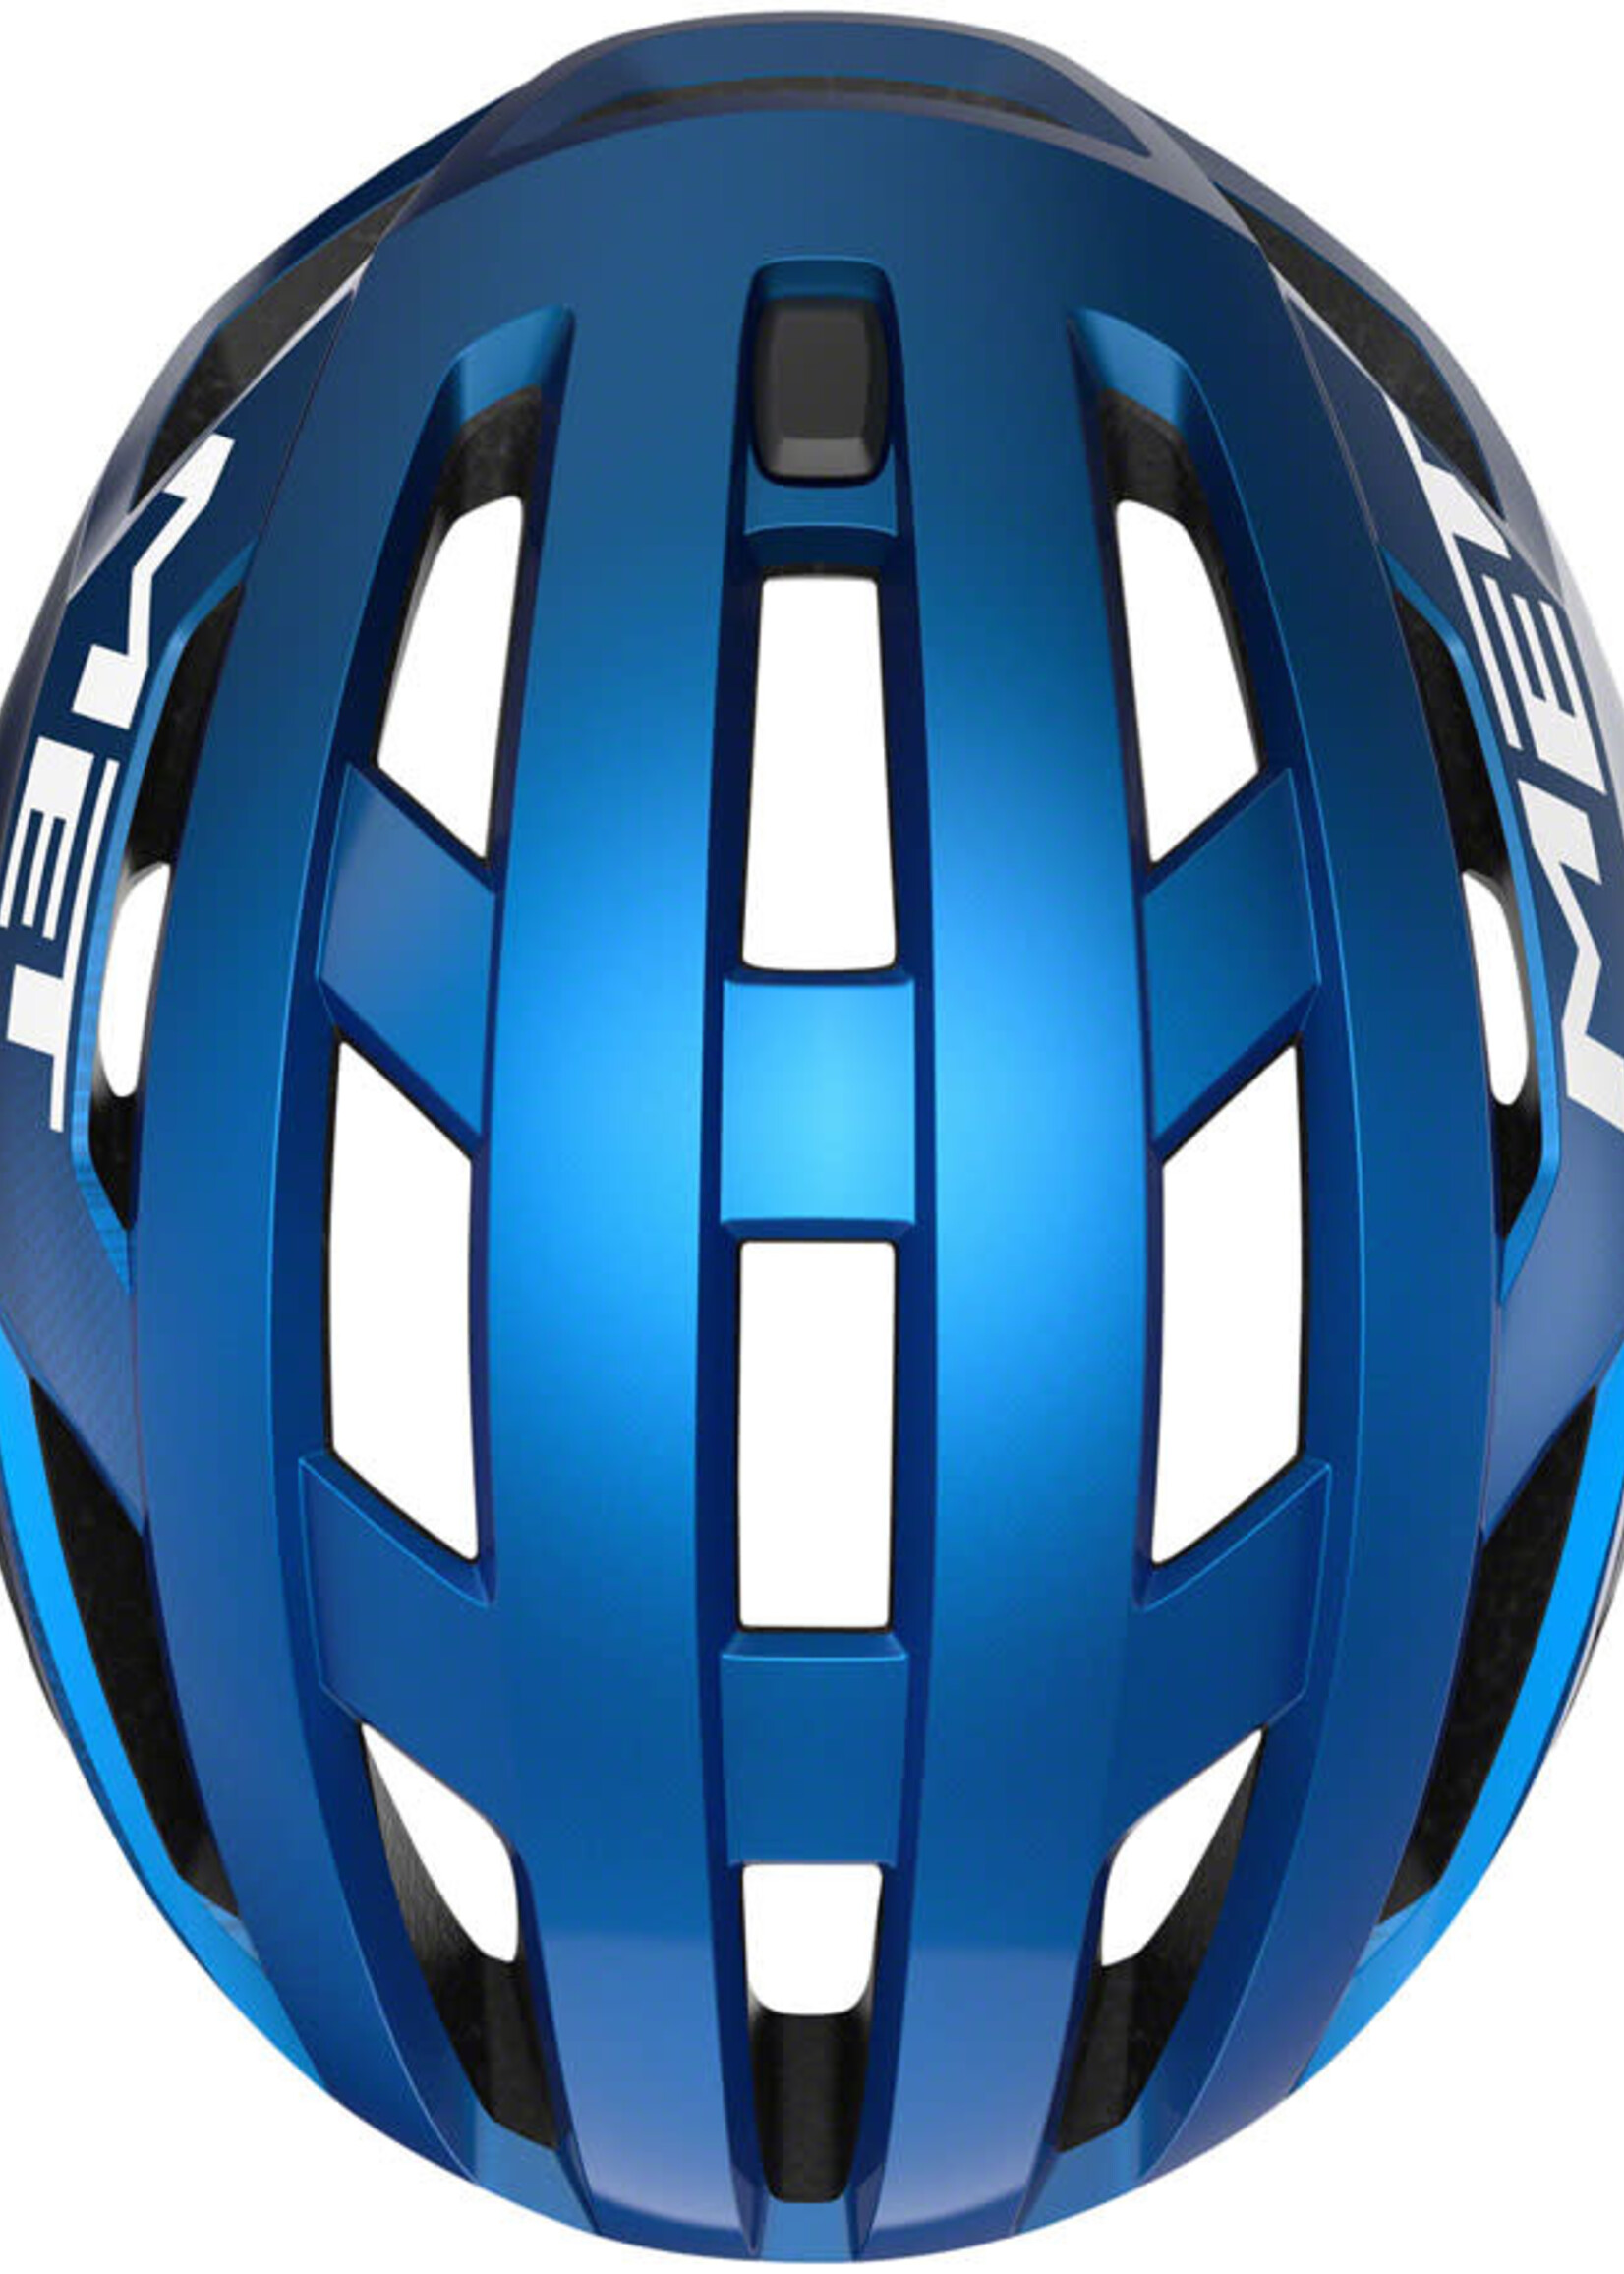 MET Helmets MET Vinci MIPS Helmet - Blue Metallic Glossy Large